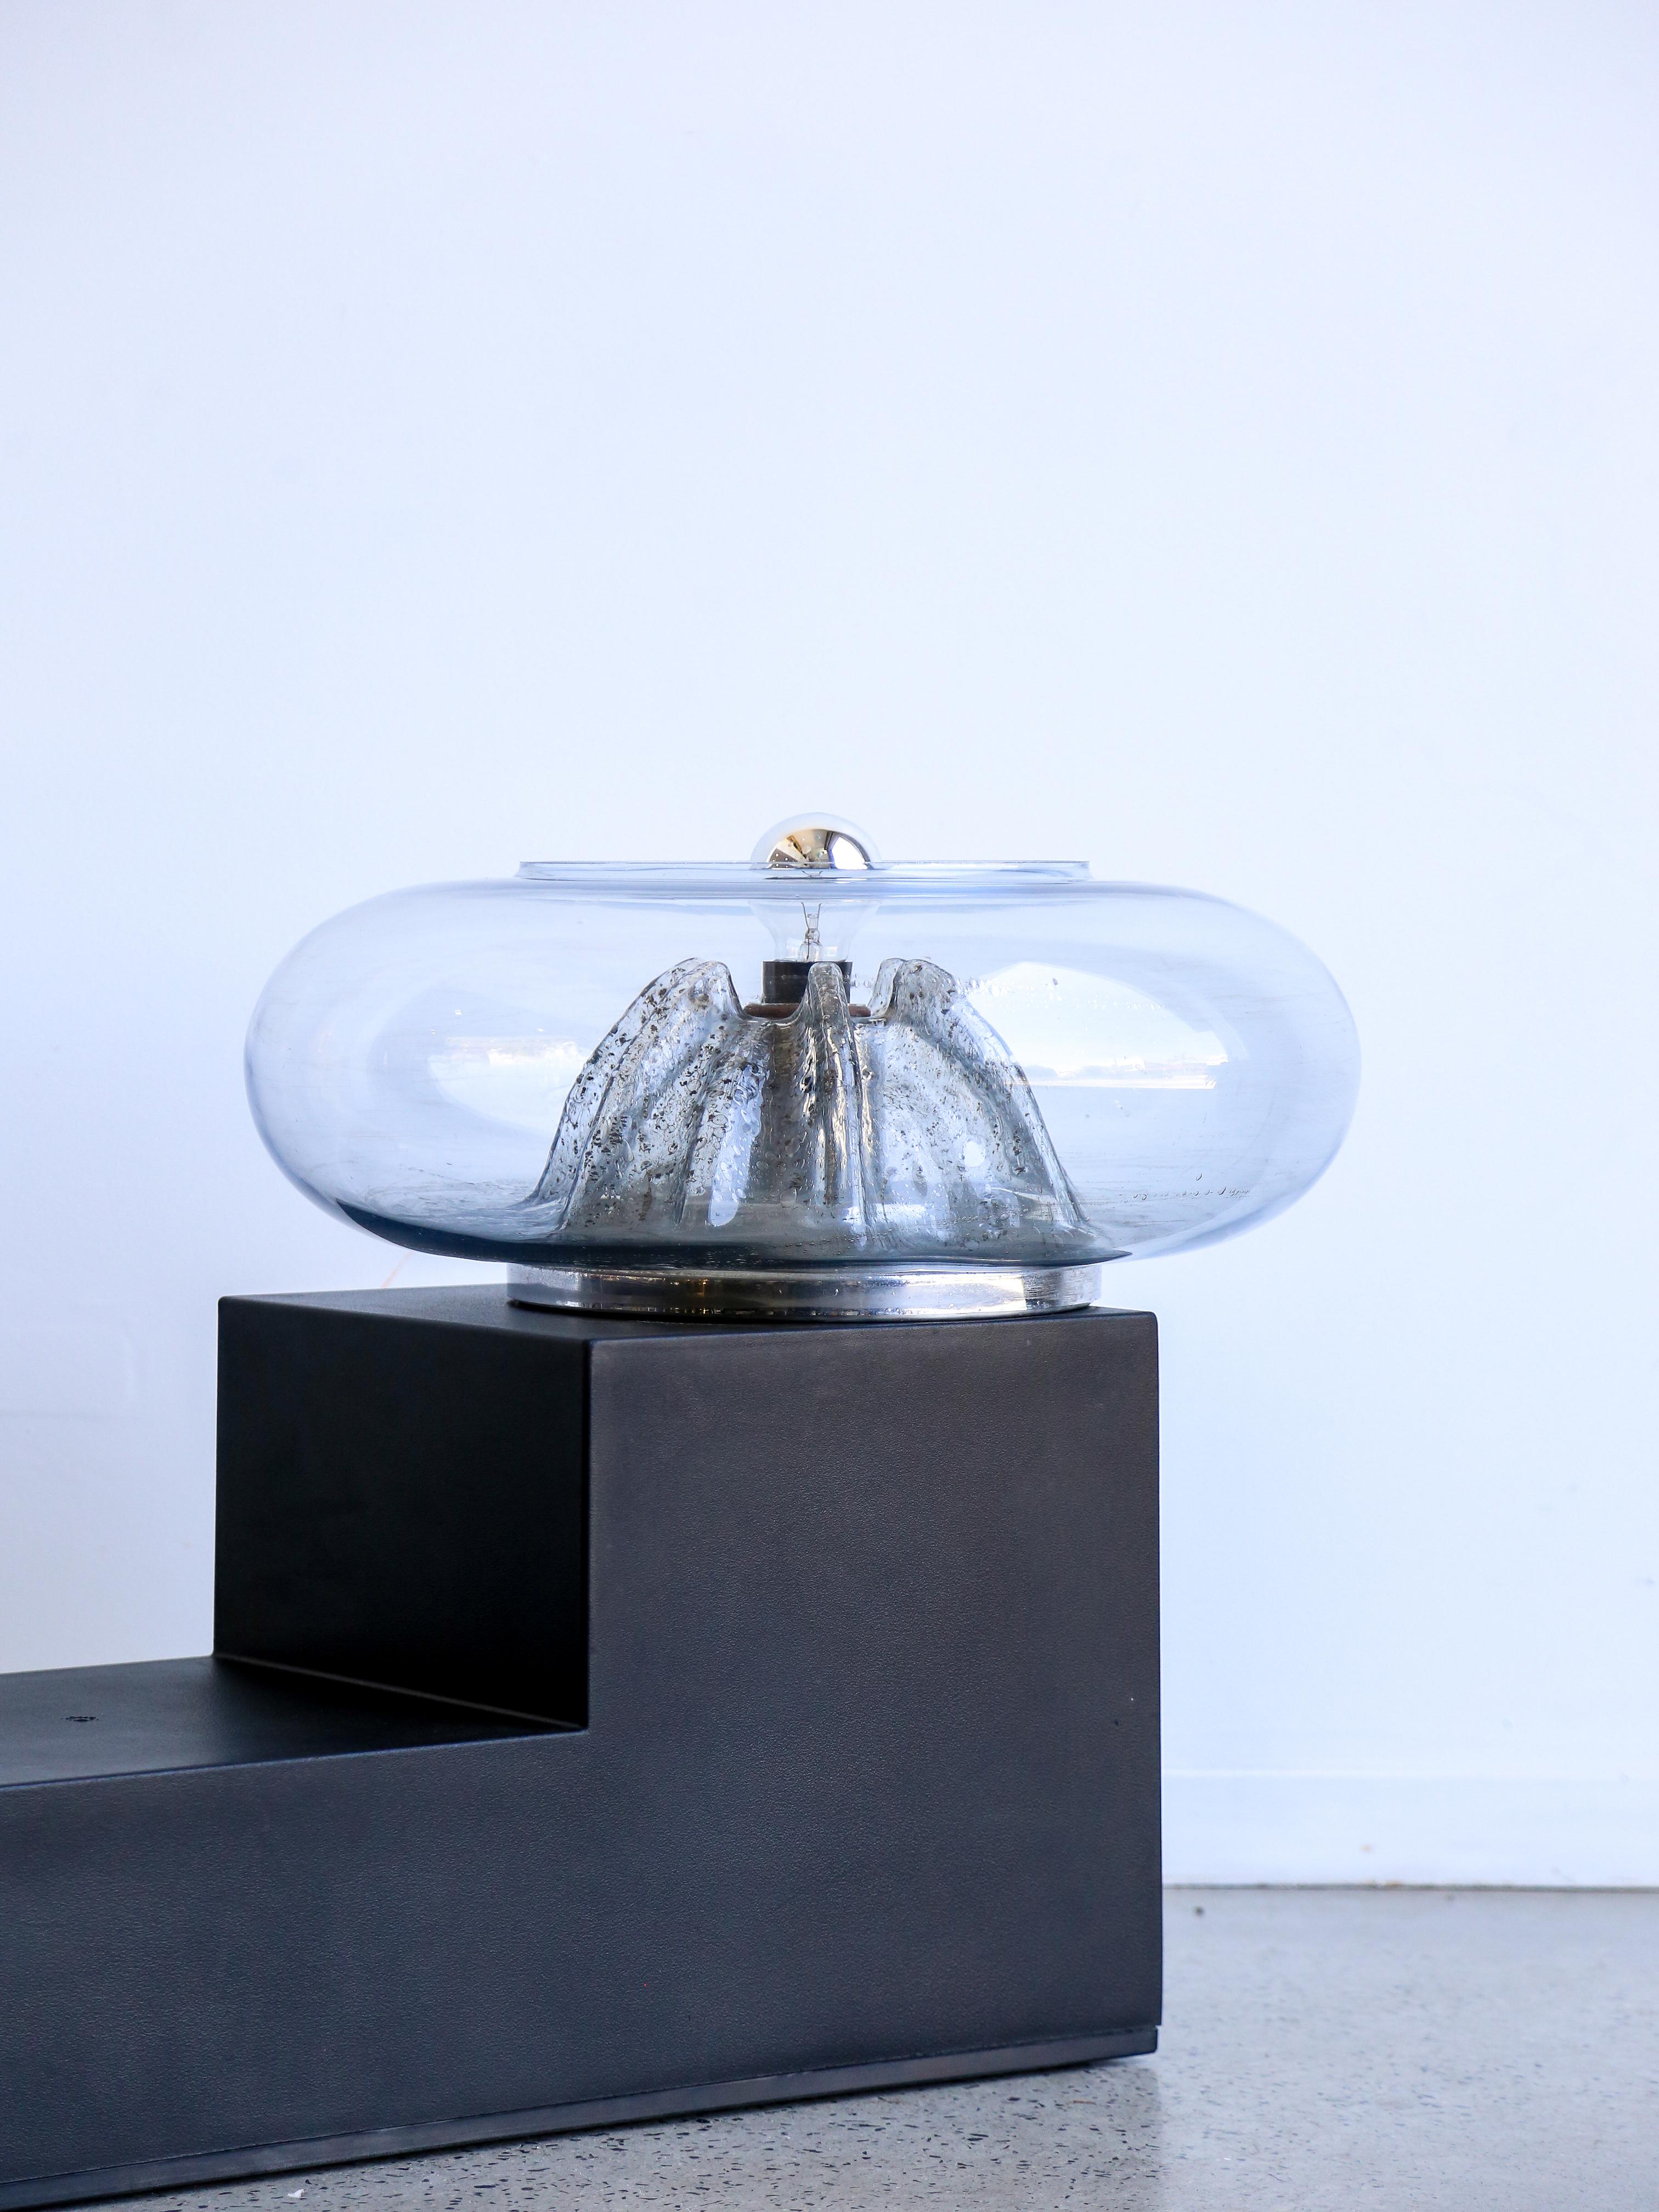 Tony Zuccheri est surtout connu pour son travail de designer de luminaires, notamment de lampes de table. Designer italien, il a cofondé la société 